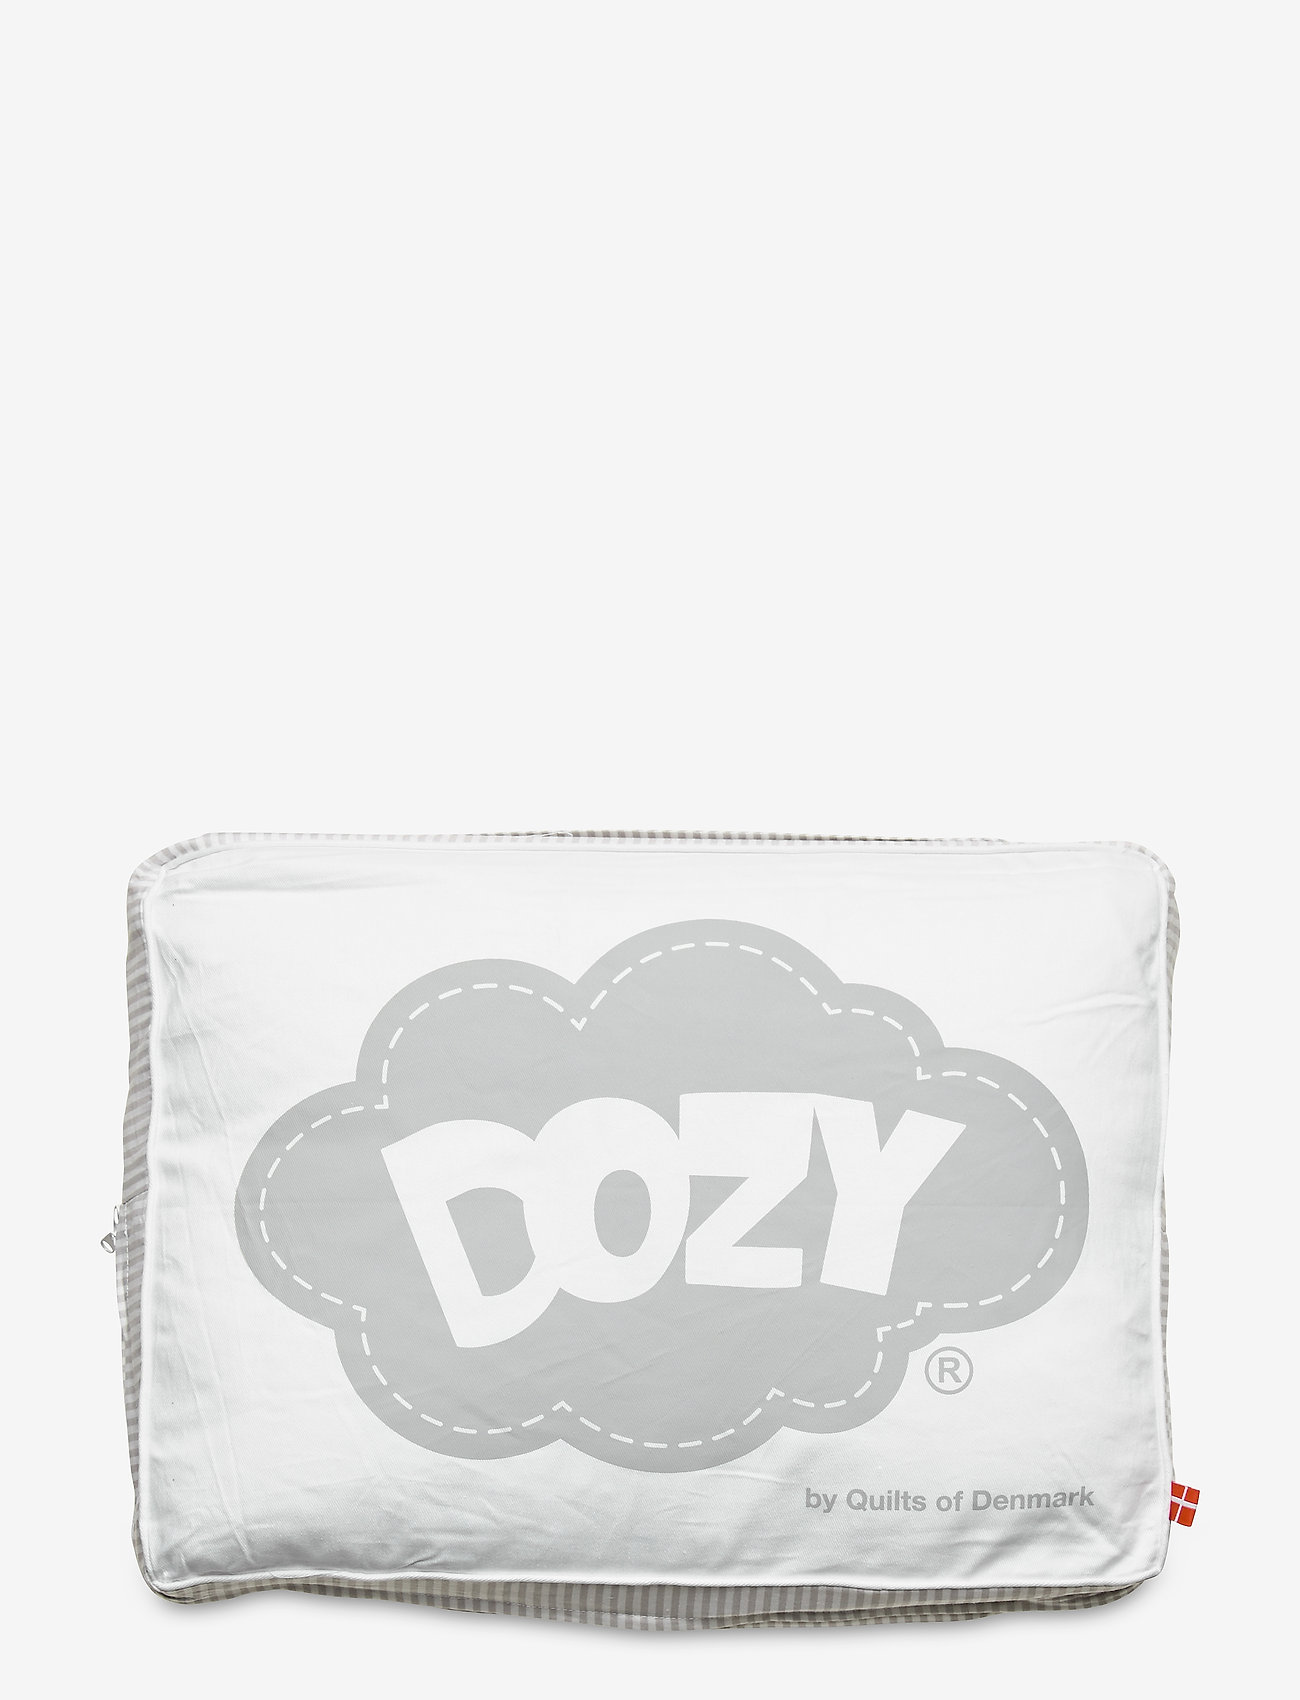 Dozy - Muscovy Down Baby Duvet - Winter Edition - bettdecken - white - 1